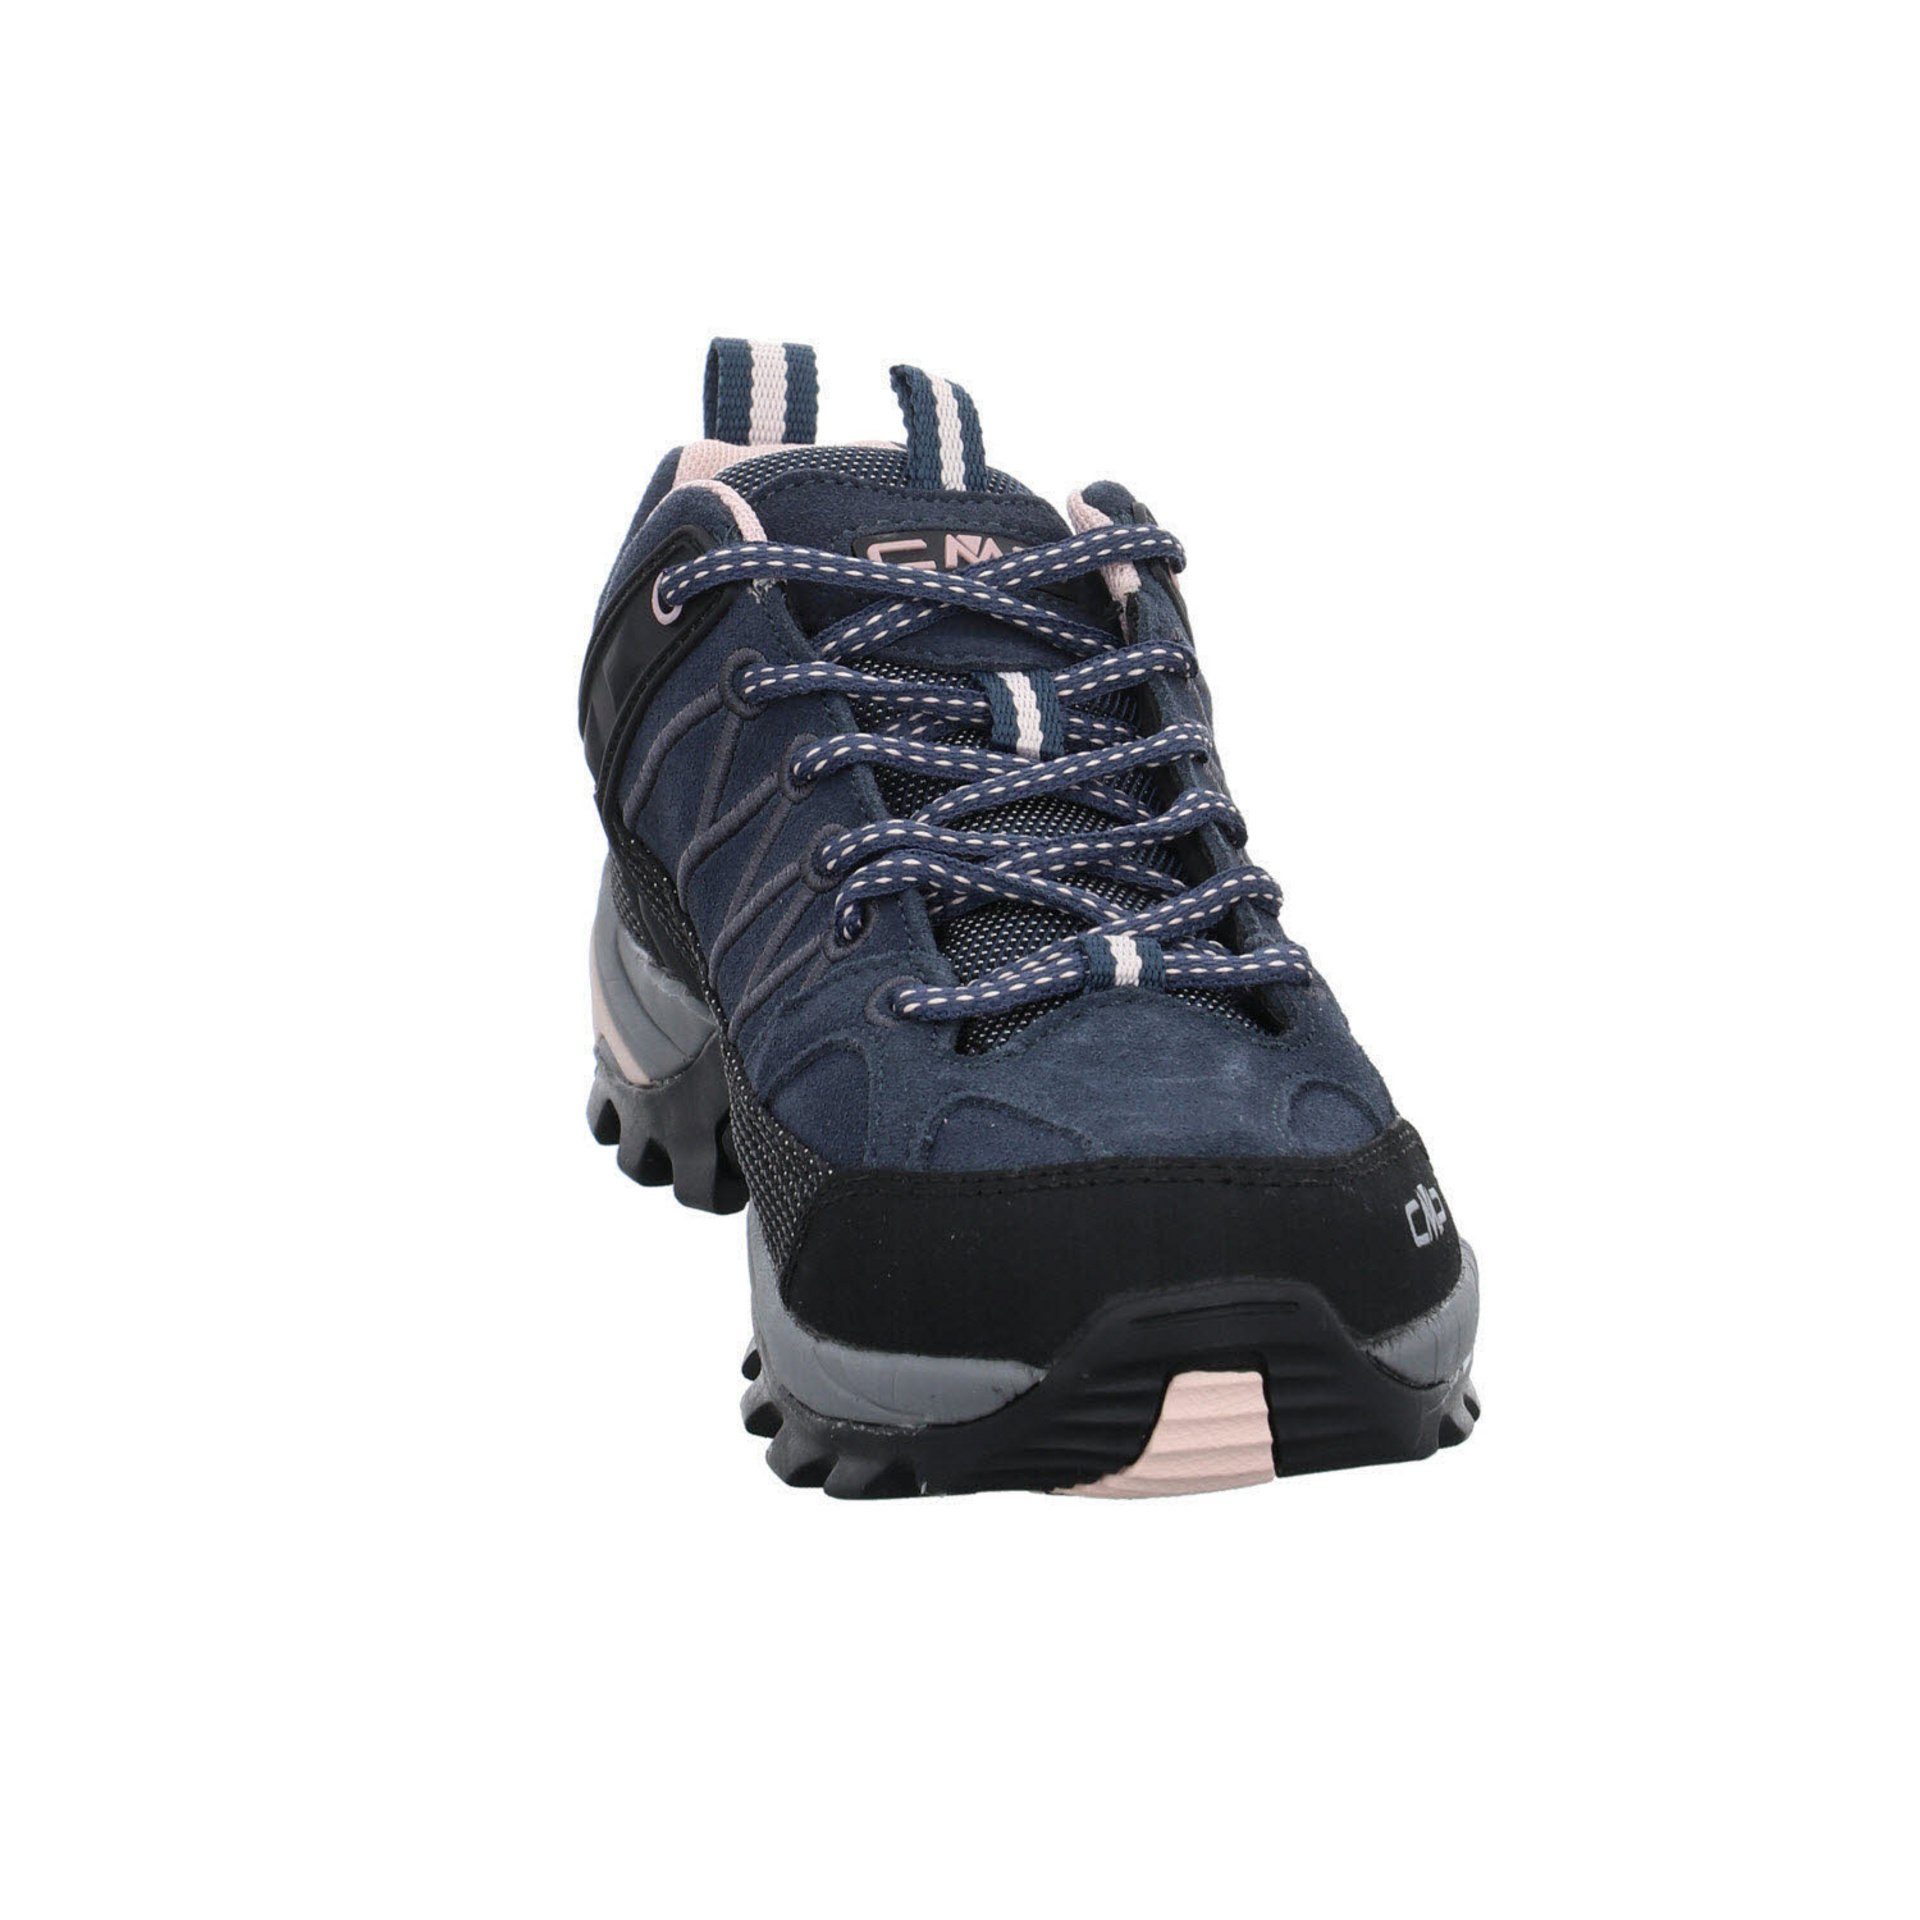 CMP Damen Schuhe Low Outdoorschuh Outdoorschuh 53UG ASPHALT-ANTRACITE-ROSE Outdoor Riegel Leder-/Textilkombination